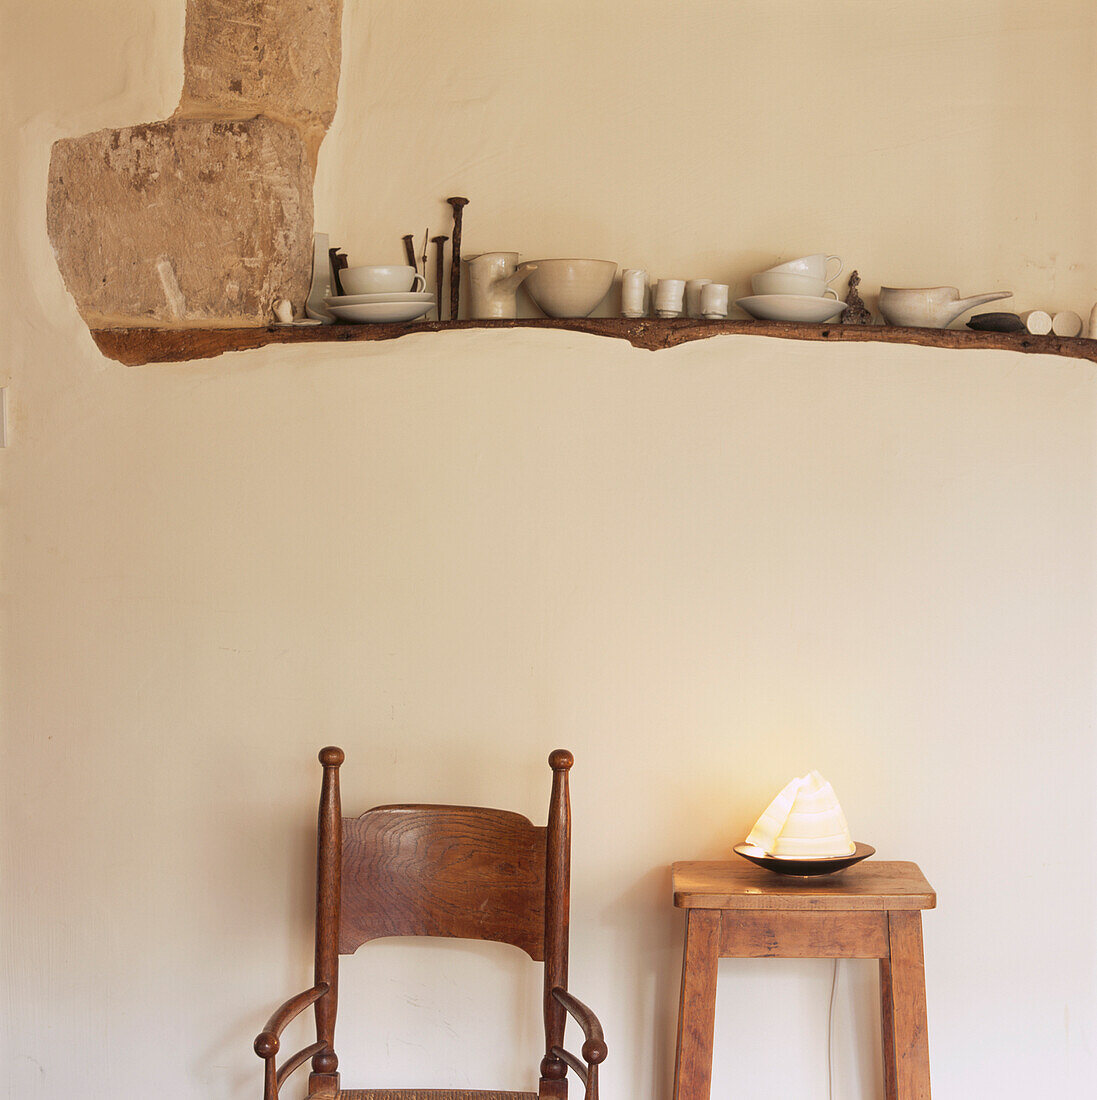 Glasierte Keramik auf einem Holzbalken in einer verputzten Wand über einem Holzsessel und einem Hocker